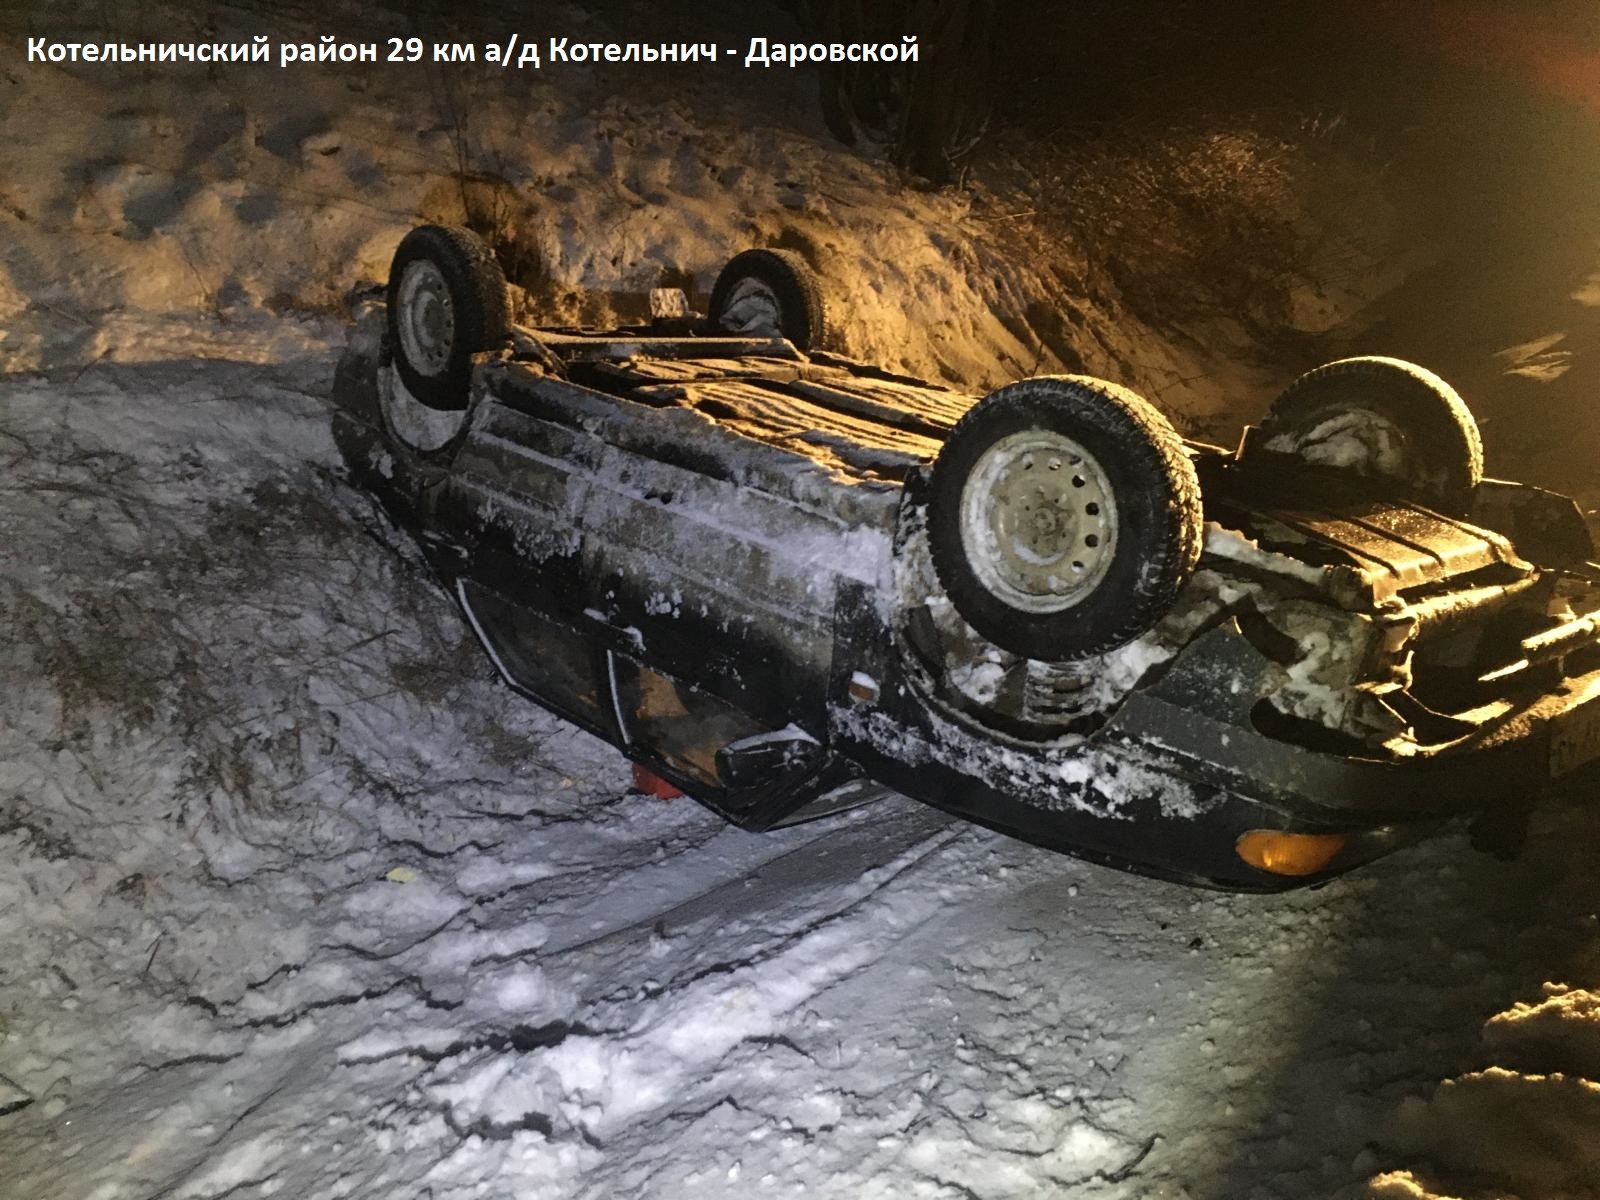 В Котельничском районе водитель сбежал с места ДТП, оставив раненого подростка